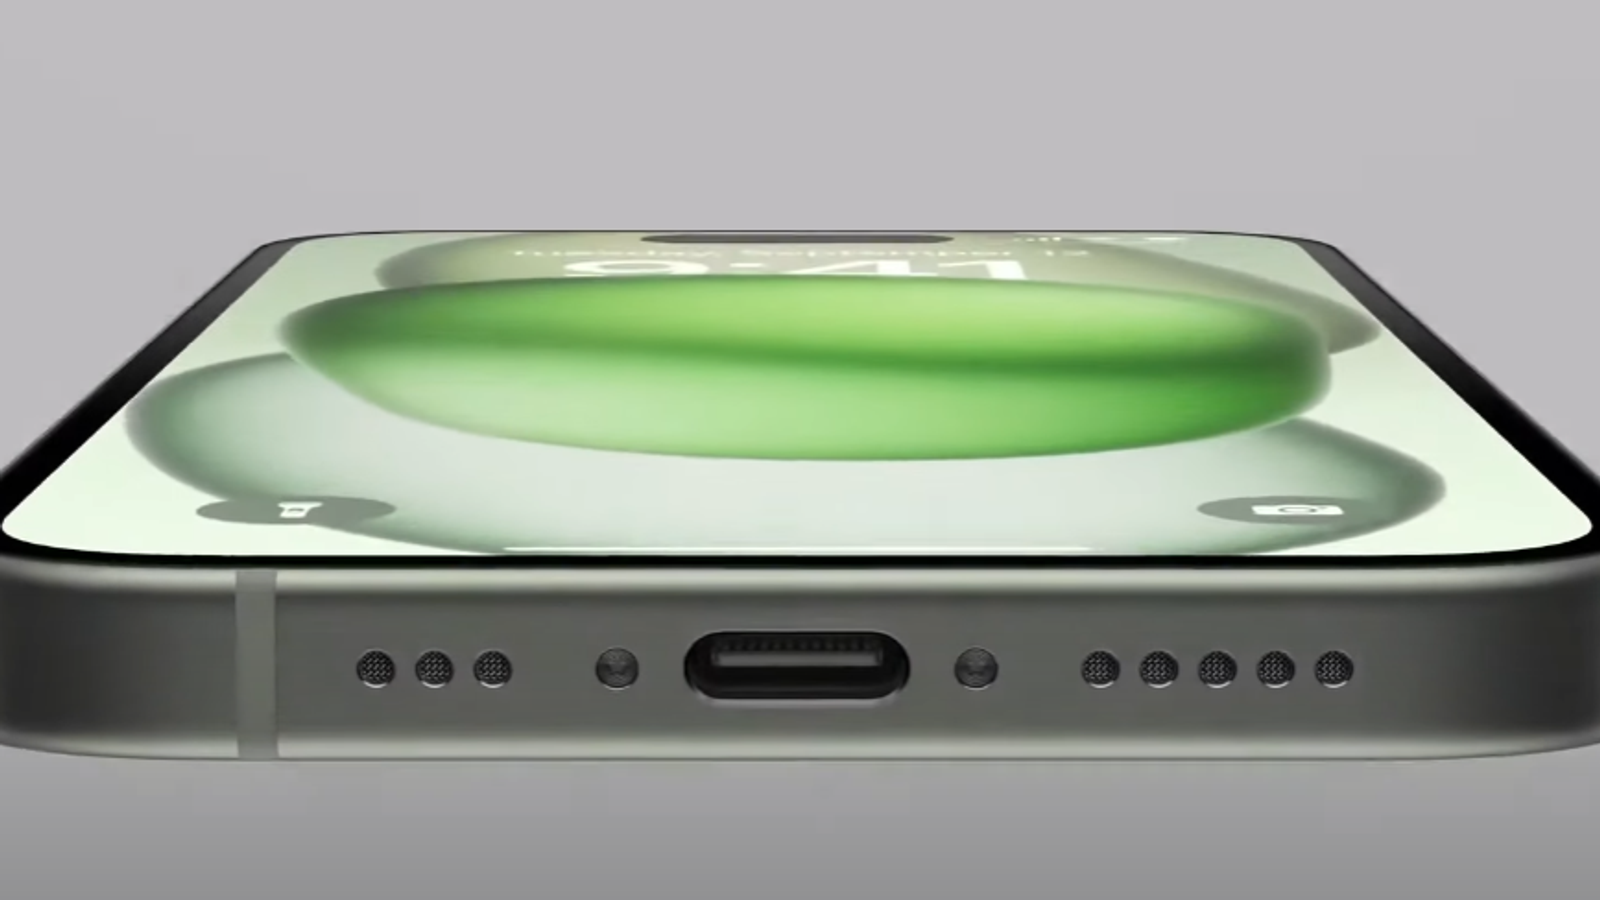 Apple afirma que o iPhone 15 Pro será o melhor console para jogos